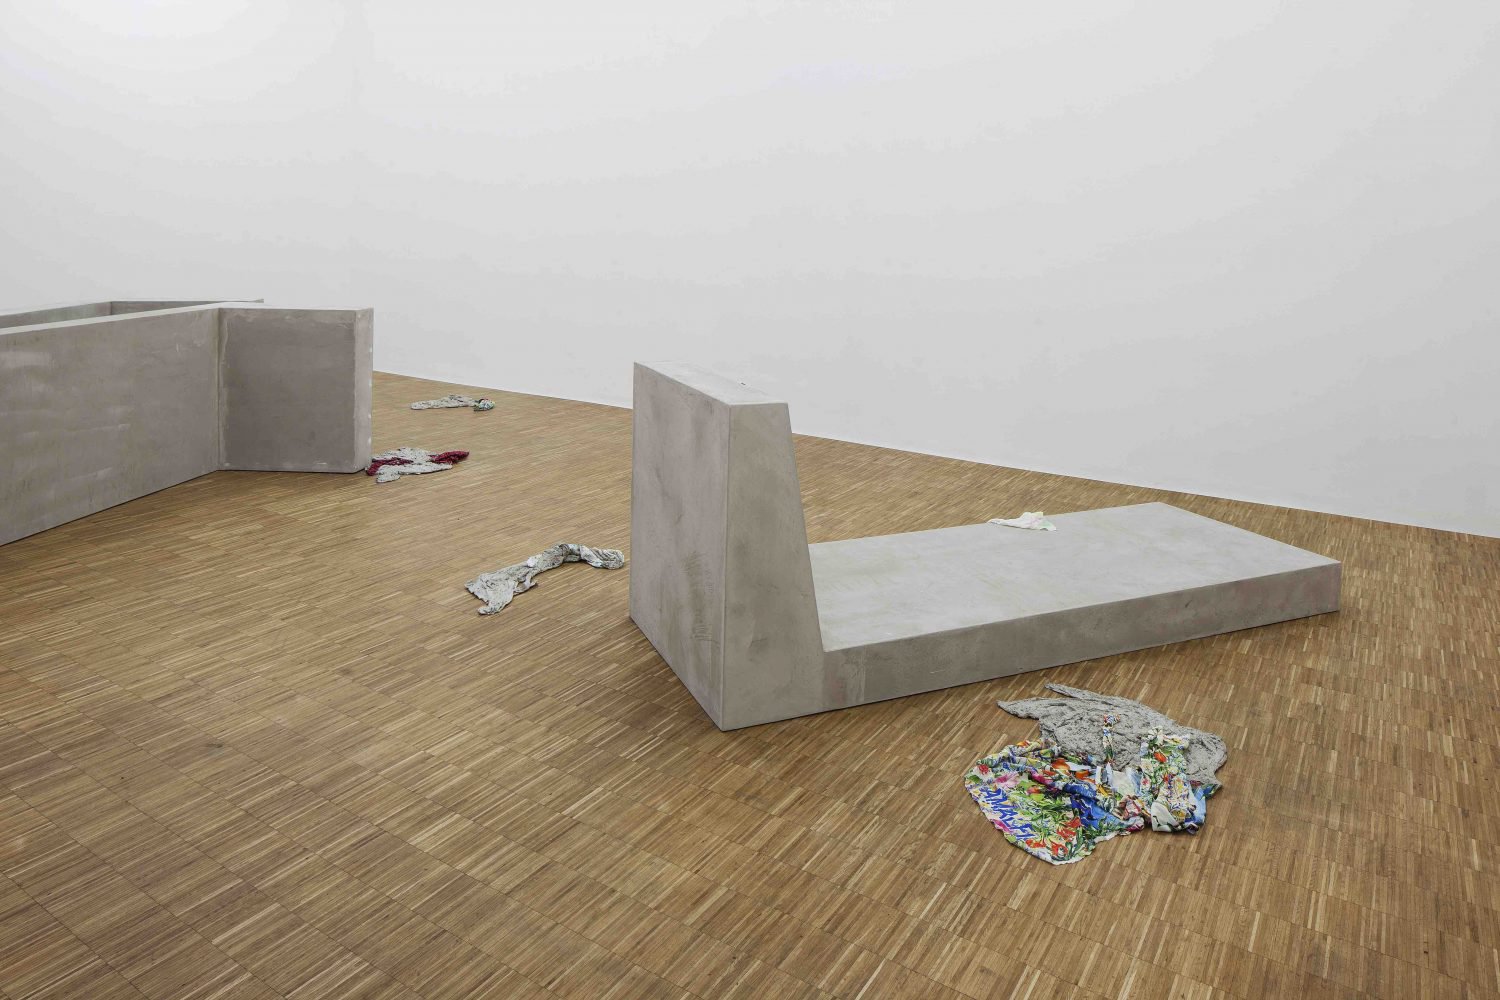 Anna-Sophie Berger, Flaka Haliti and Hayley SilvermanInstallation viewI Surrender, Dear, Salzburger Kunstverein, Salzburg, 2016